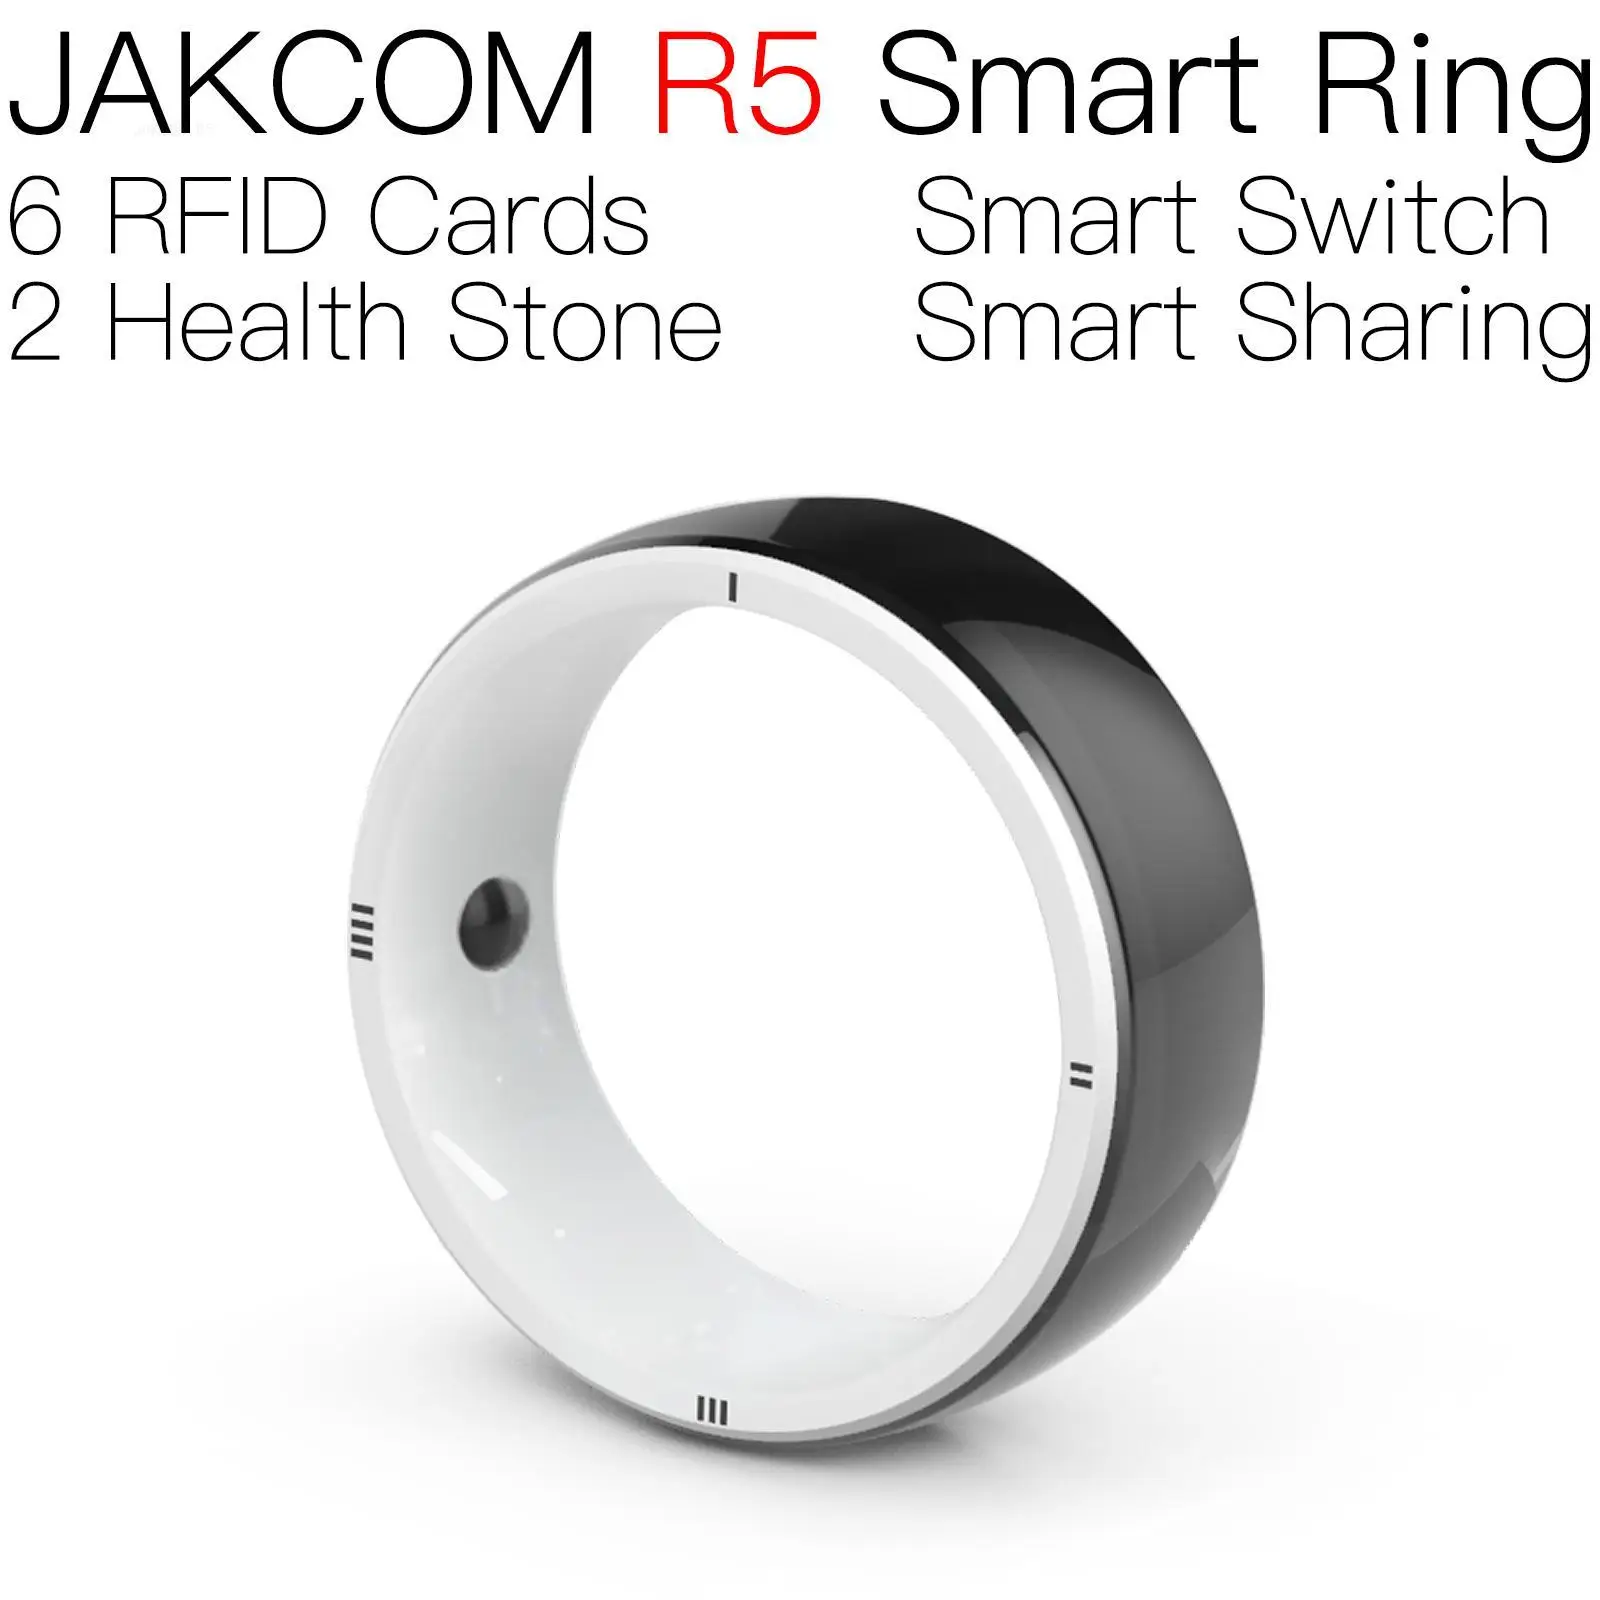 

Смарт-кольцо JAKCOM R5, супер качество, как аннимал пересечение, новый horizon carte amibo magic watch 2 rfid iso11785 взлом